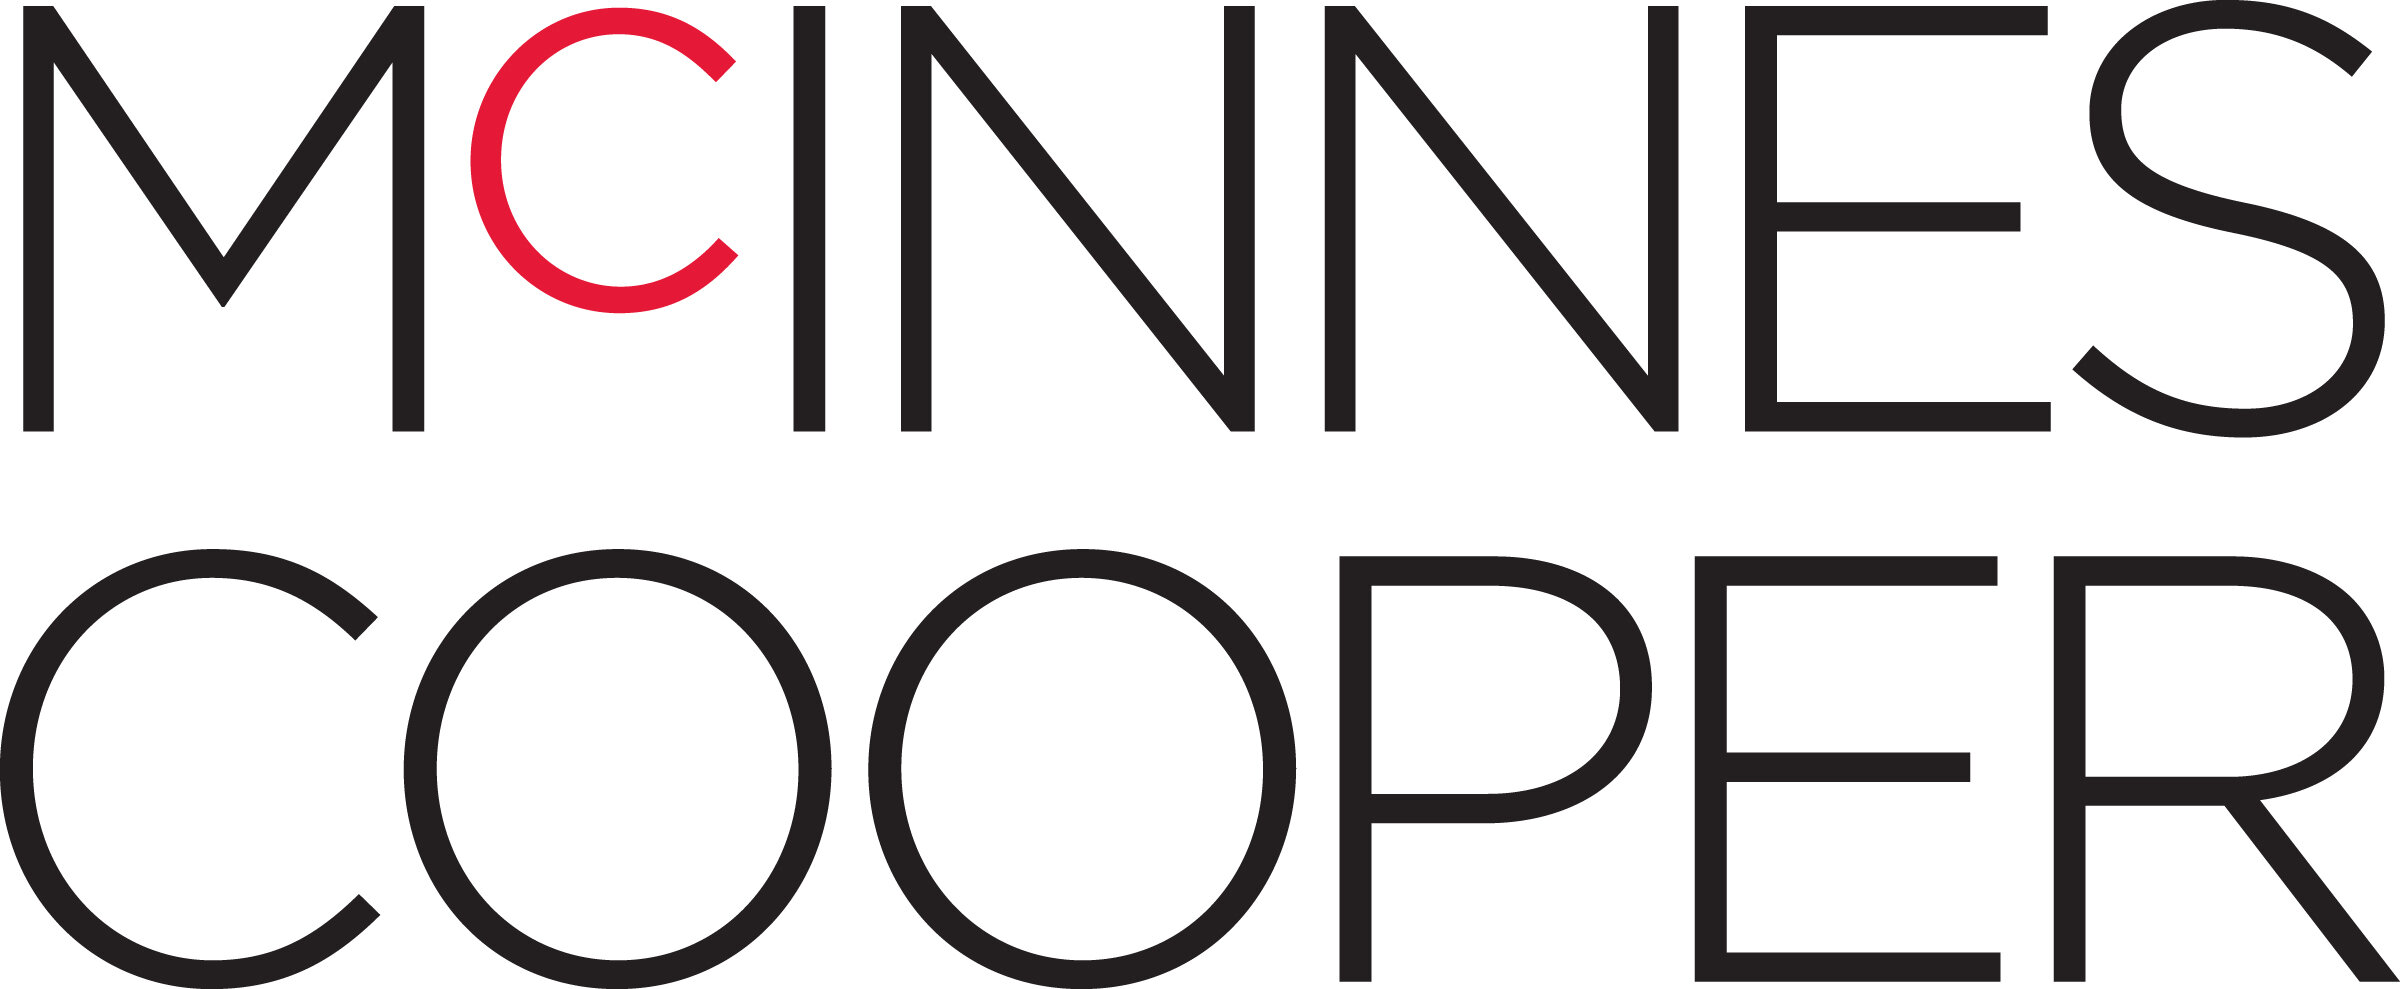 McInnes Cooper Logo.jpg